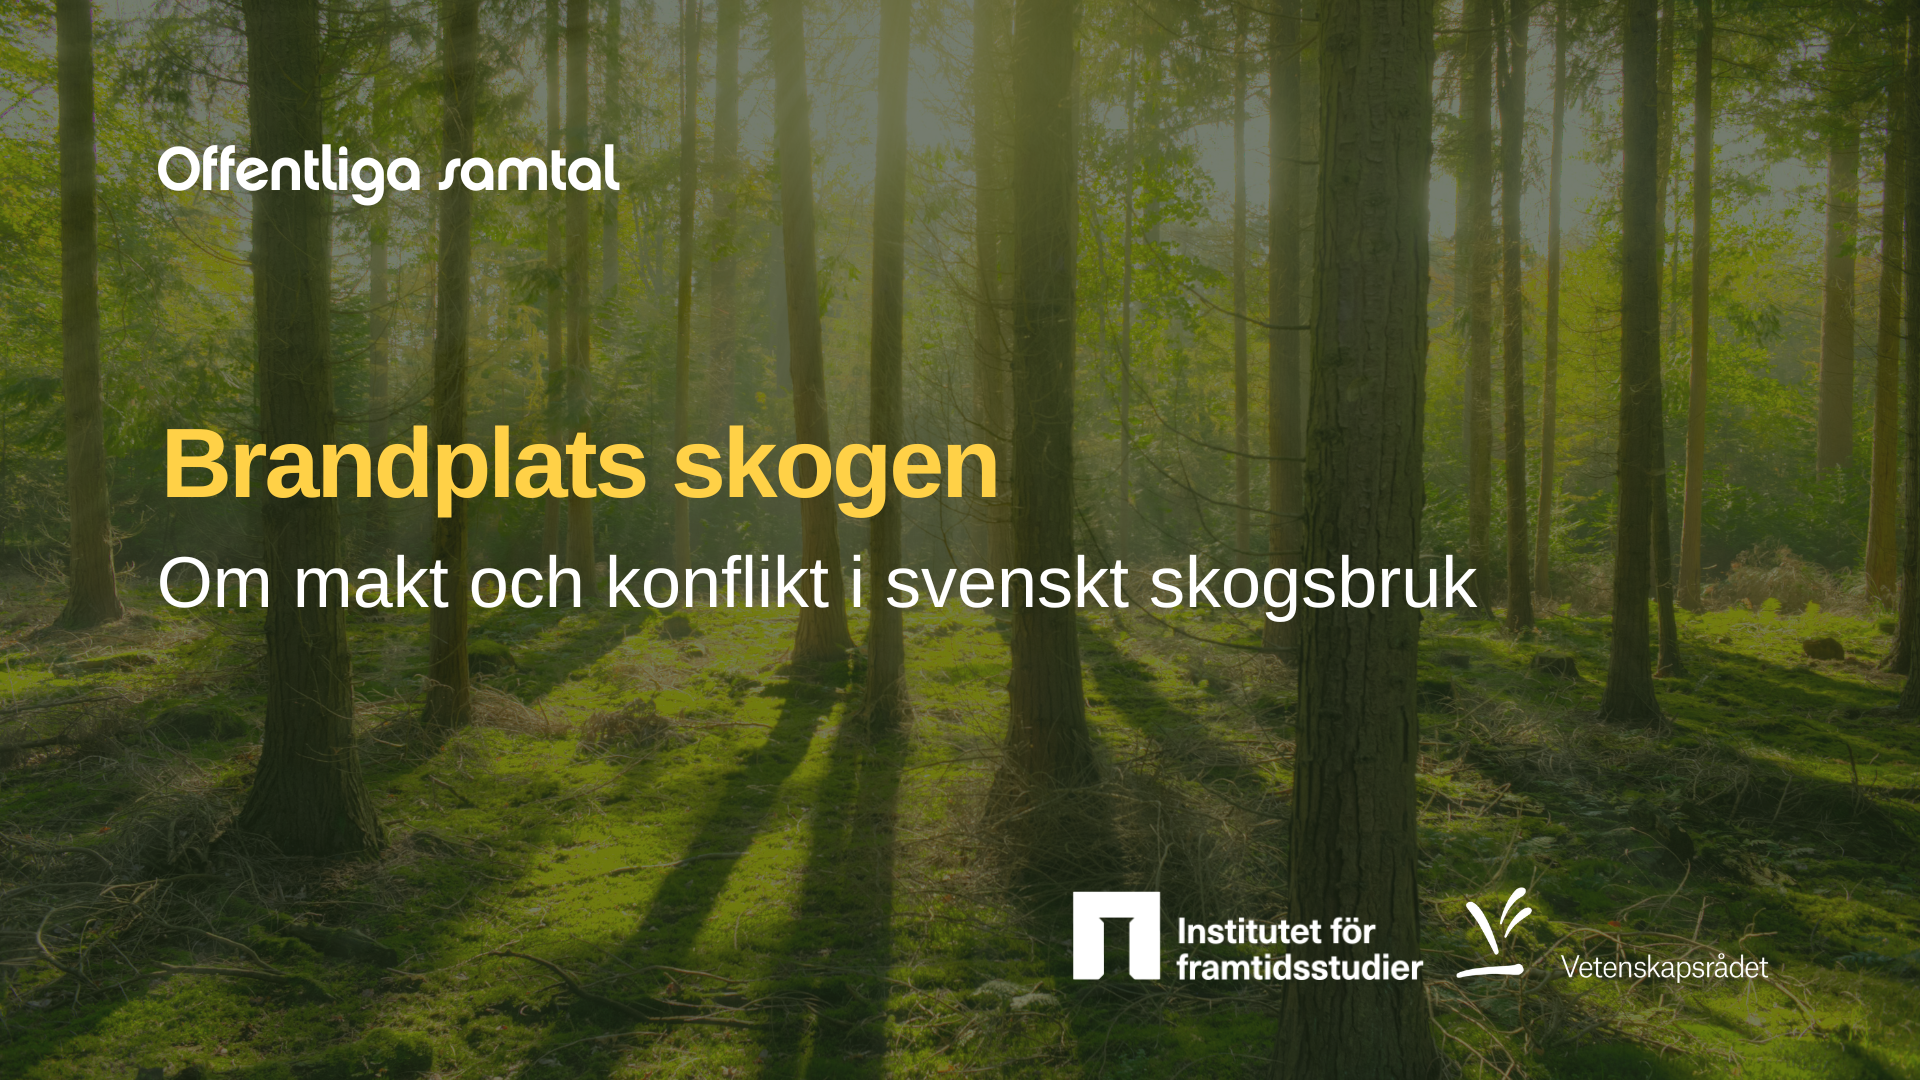 Foto av träd i en skog. I bilden står texten brandplats skogen, om makt och konflikt i svenskt skogsbruk.